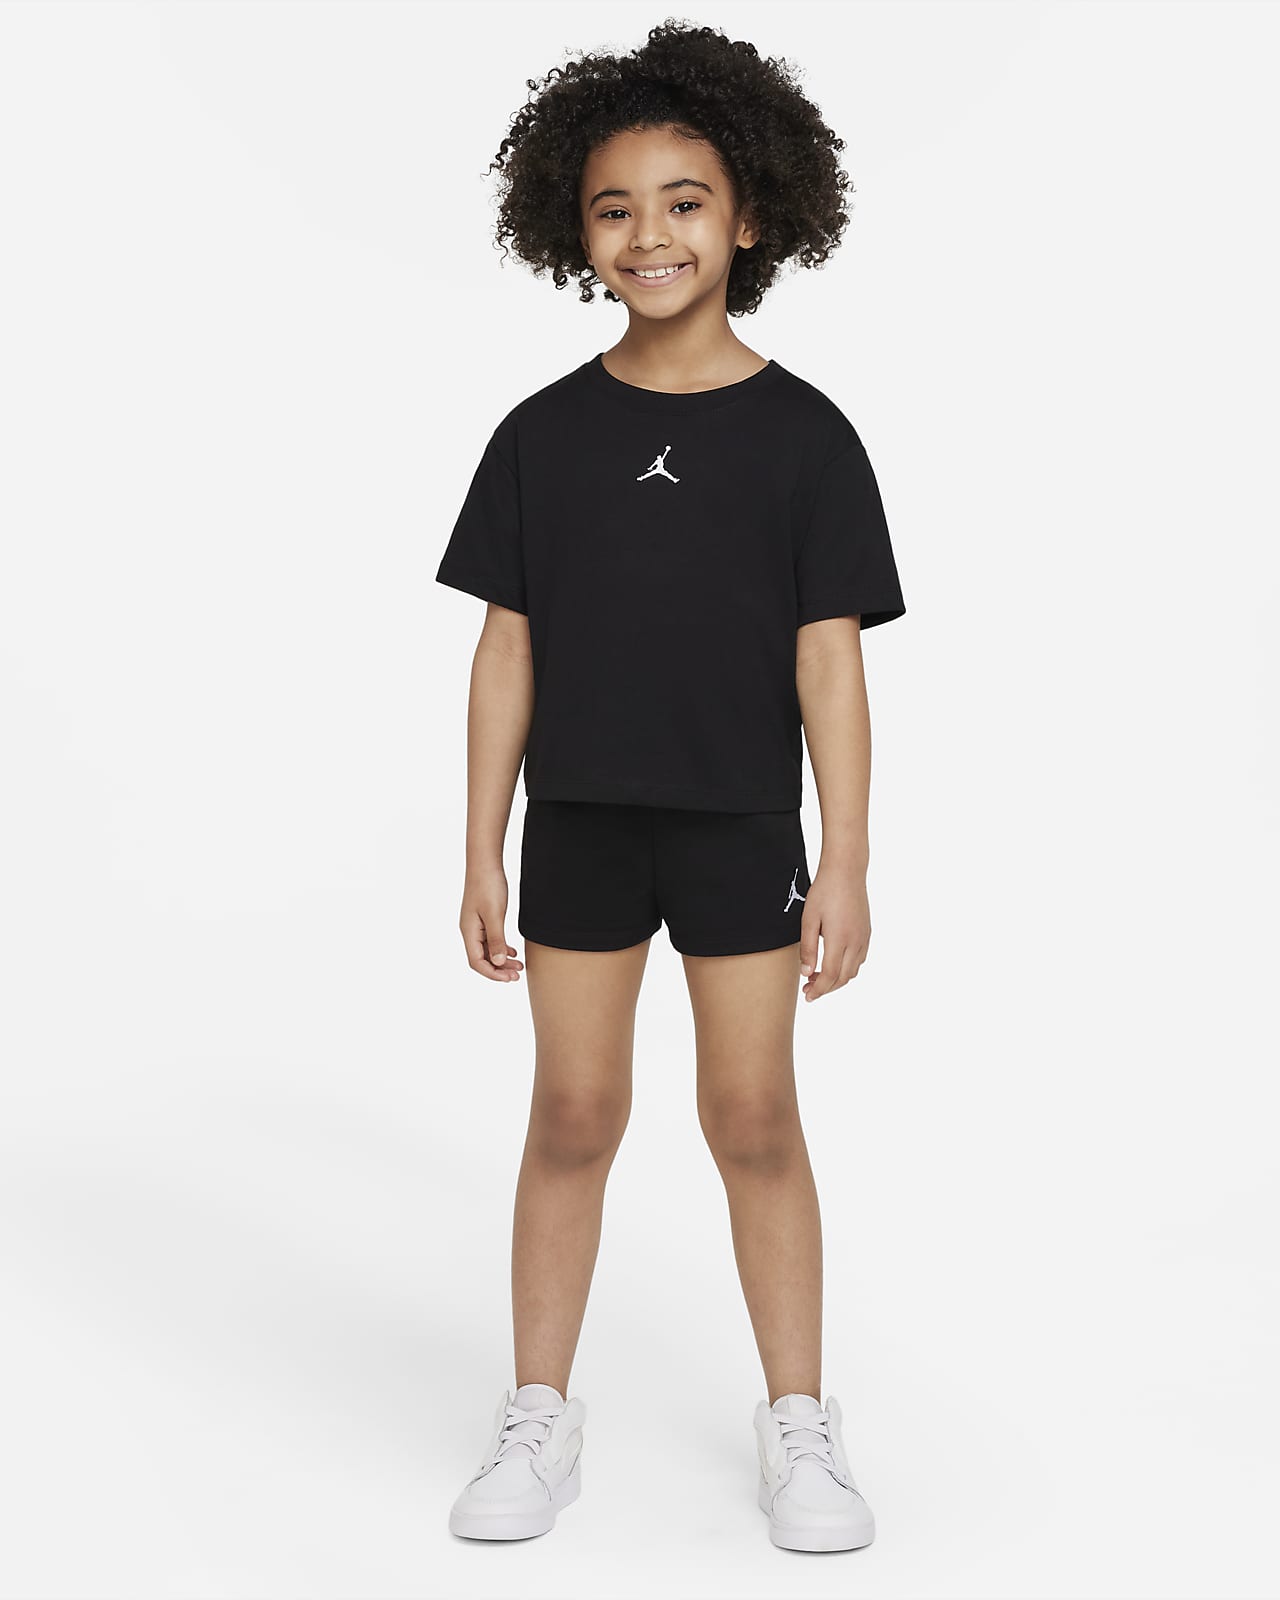 Jordan Essentials Little Kids' Shorts Set